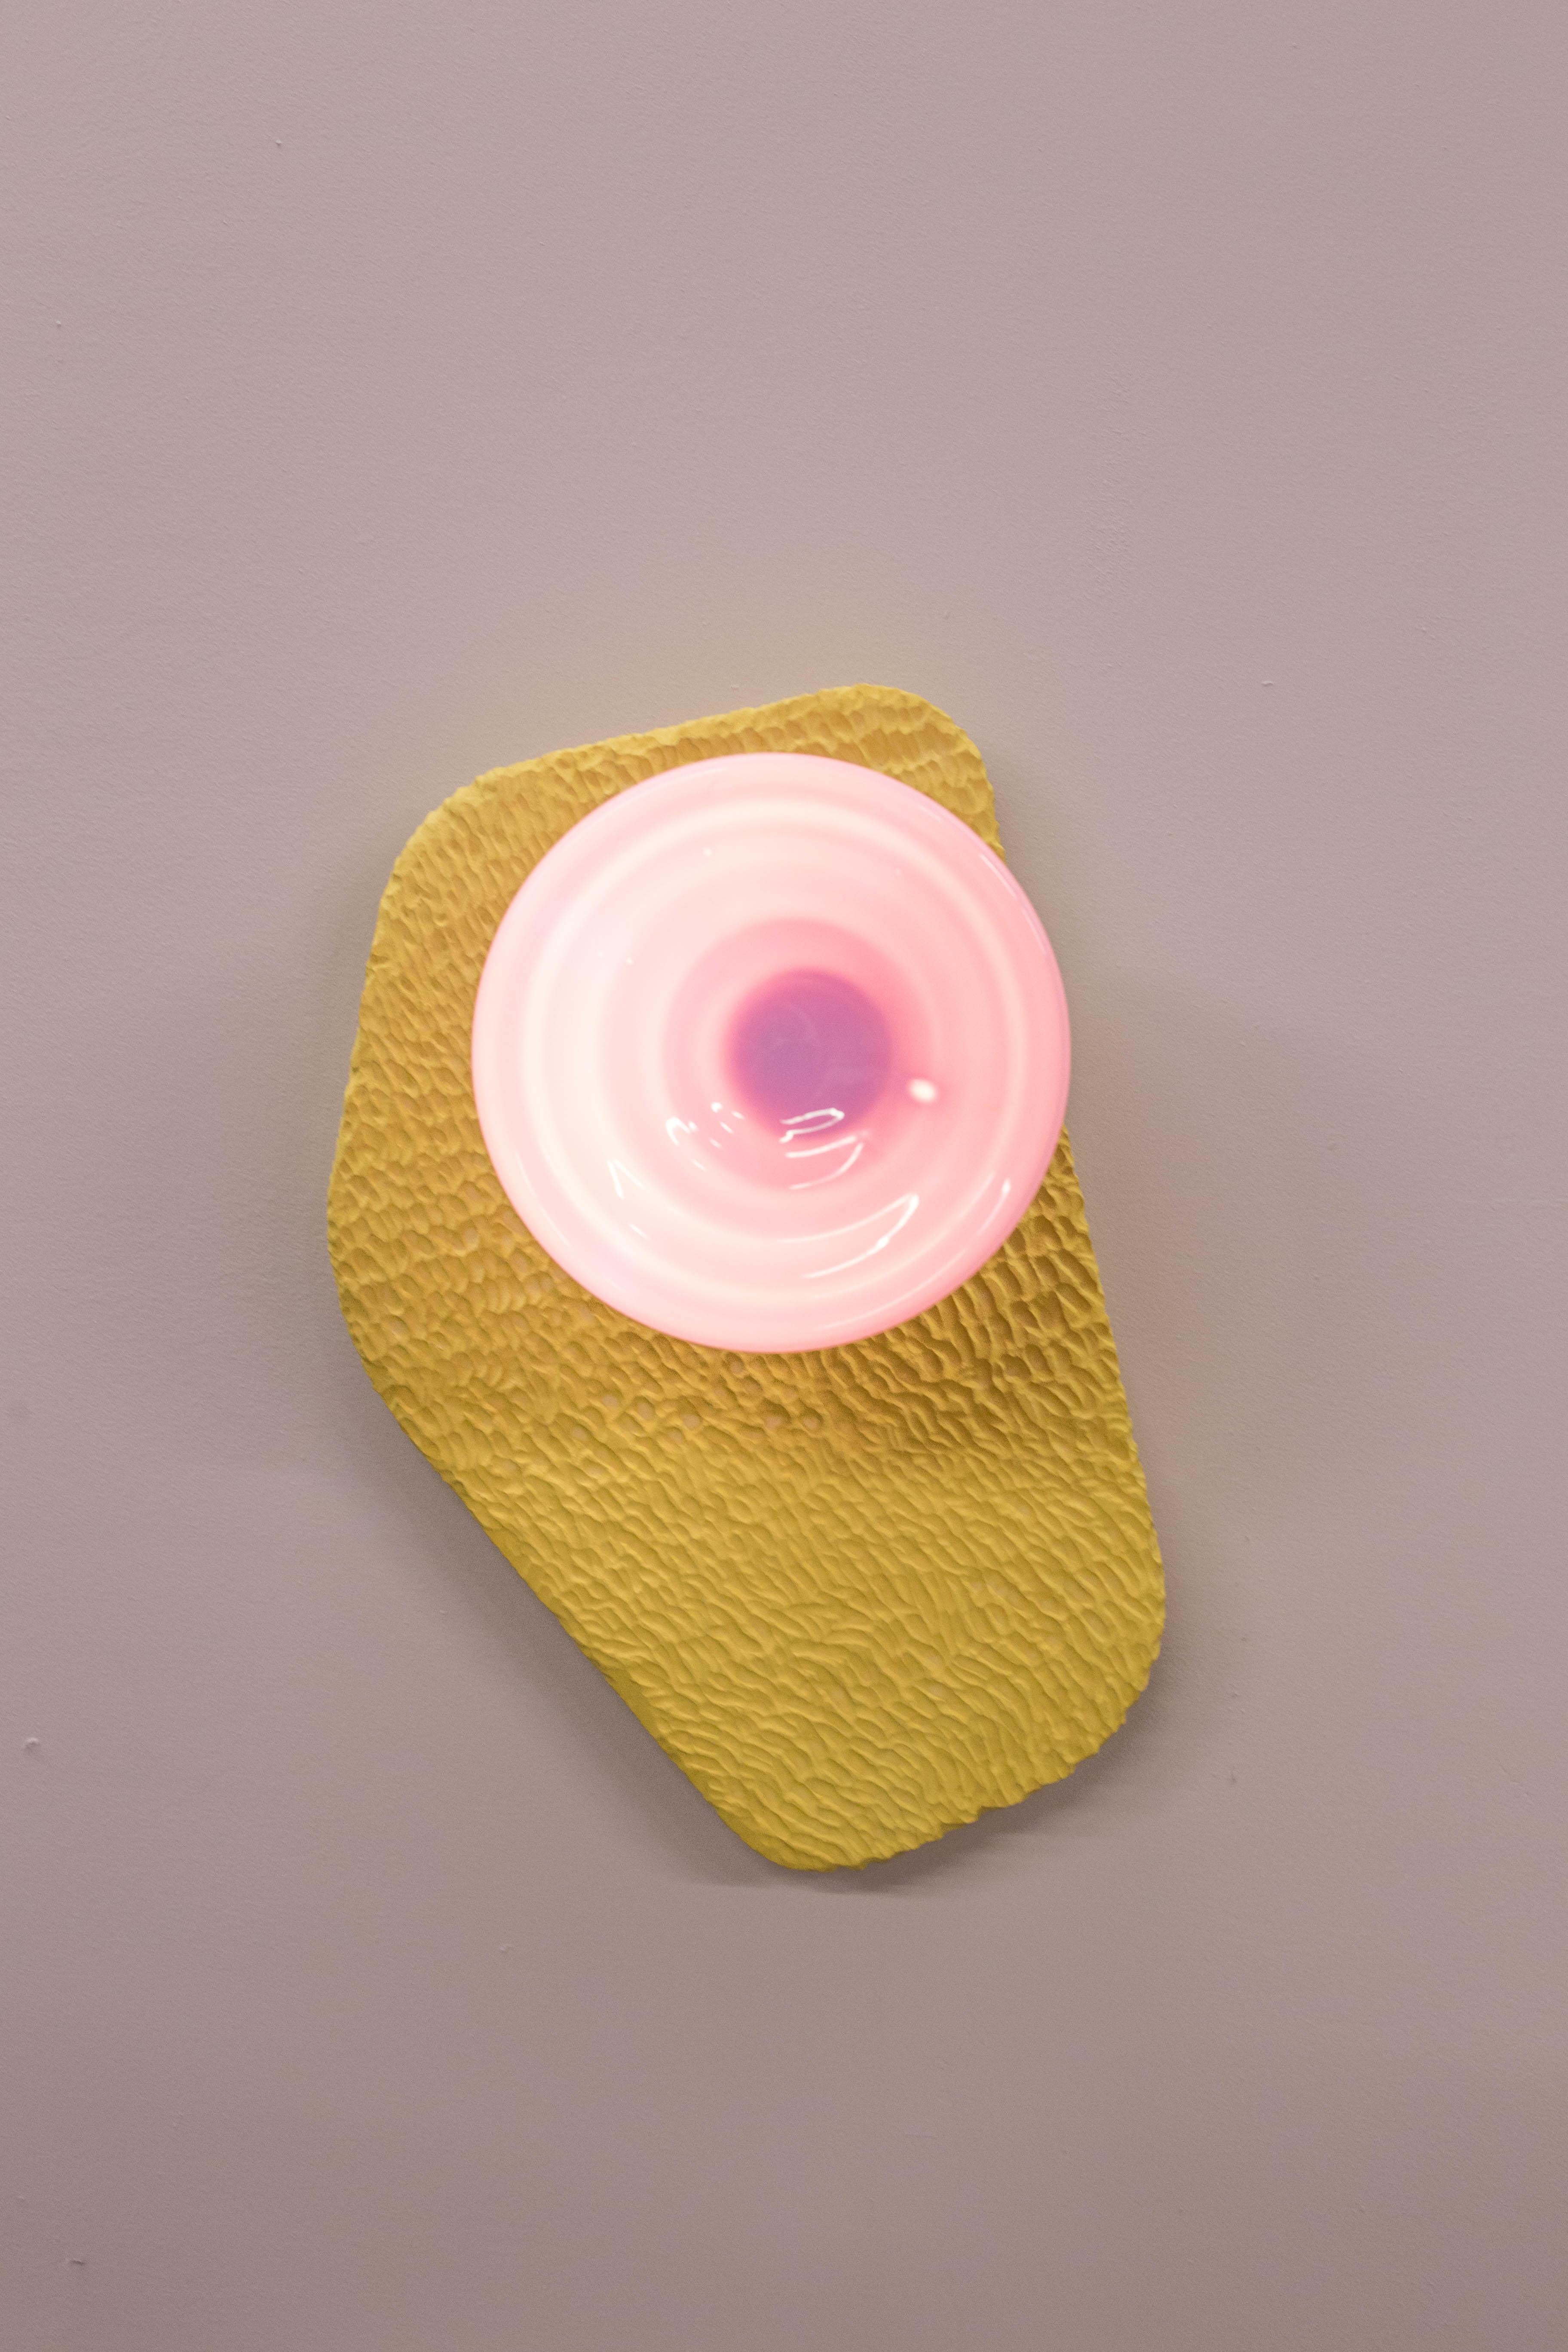 Contemporary Cymatic Lens Sconces 'Pair'